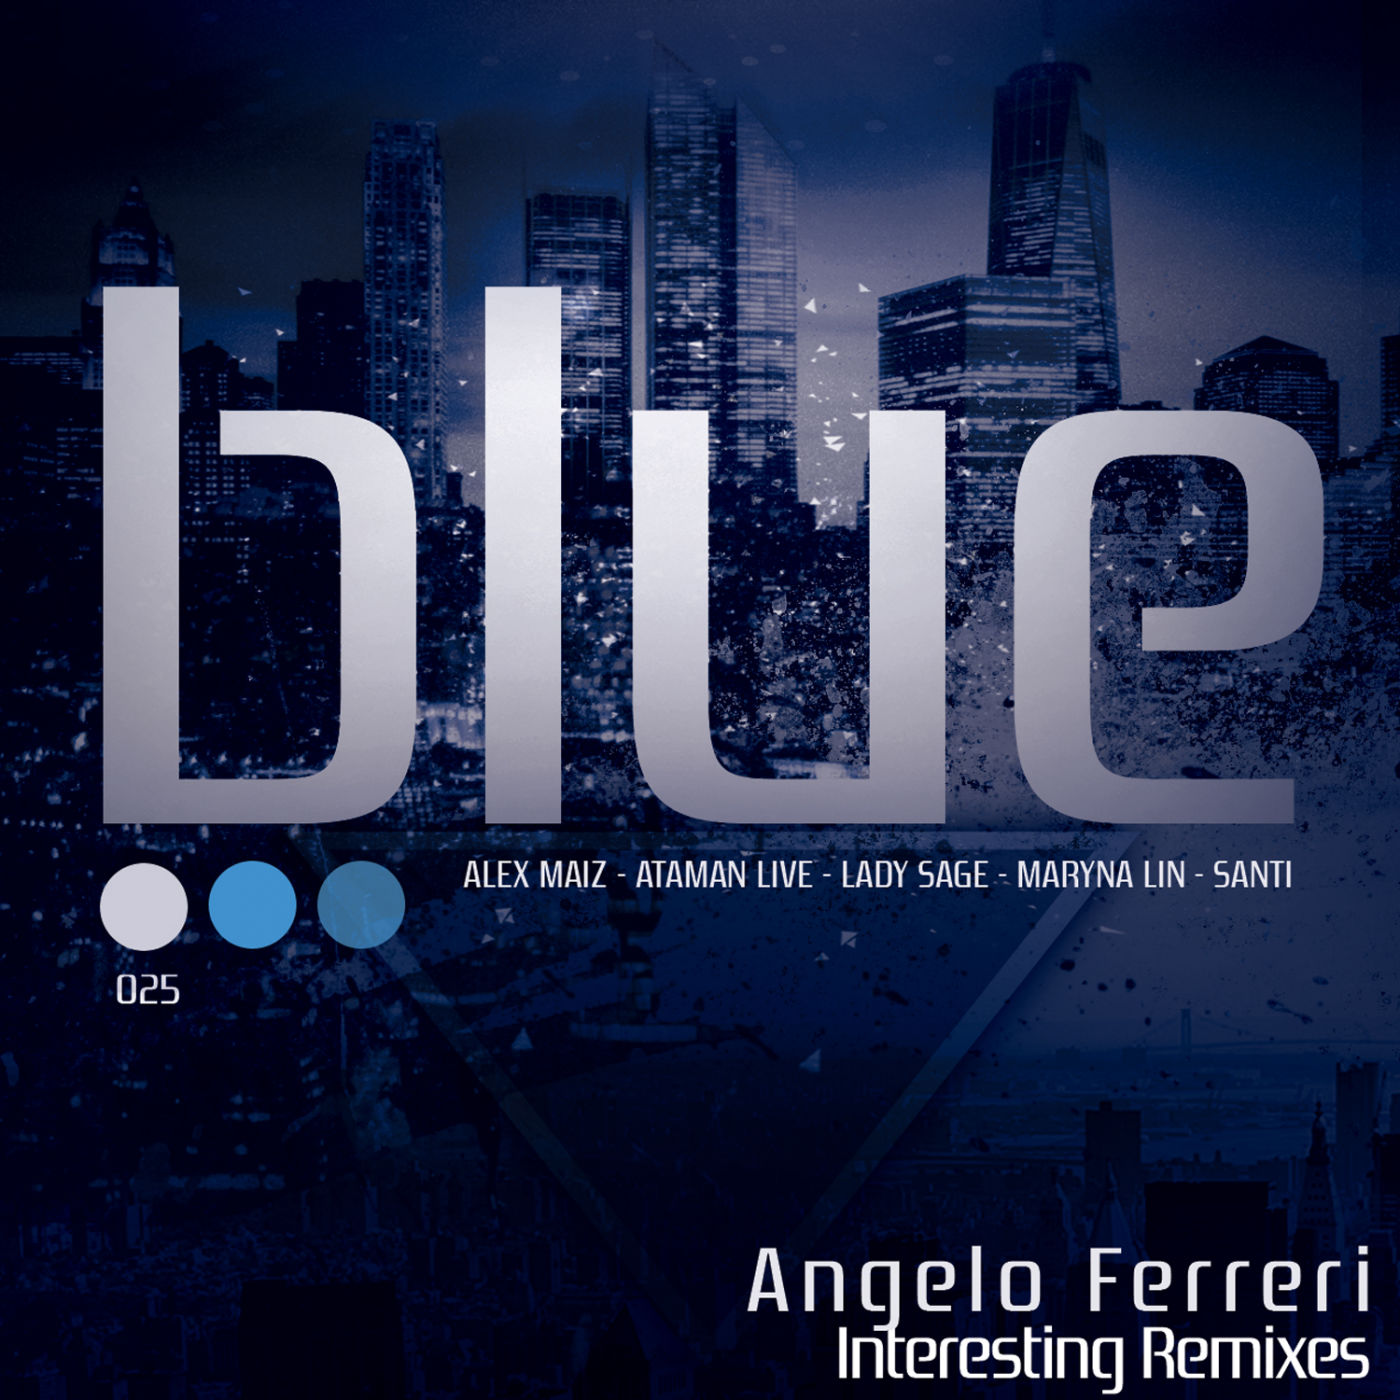 Angelo Ferreri - Interesting / Blue